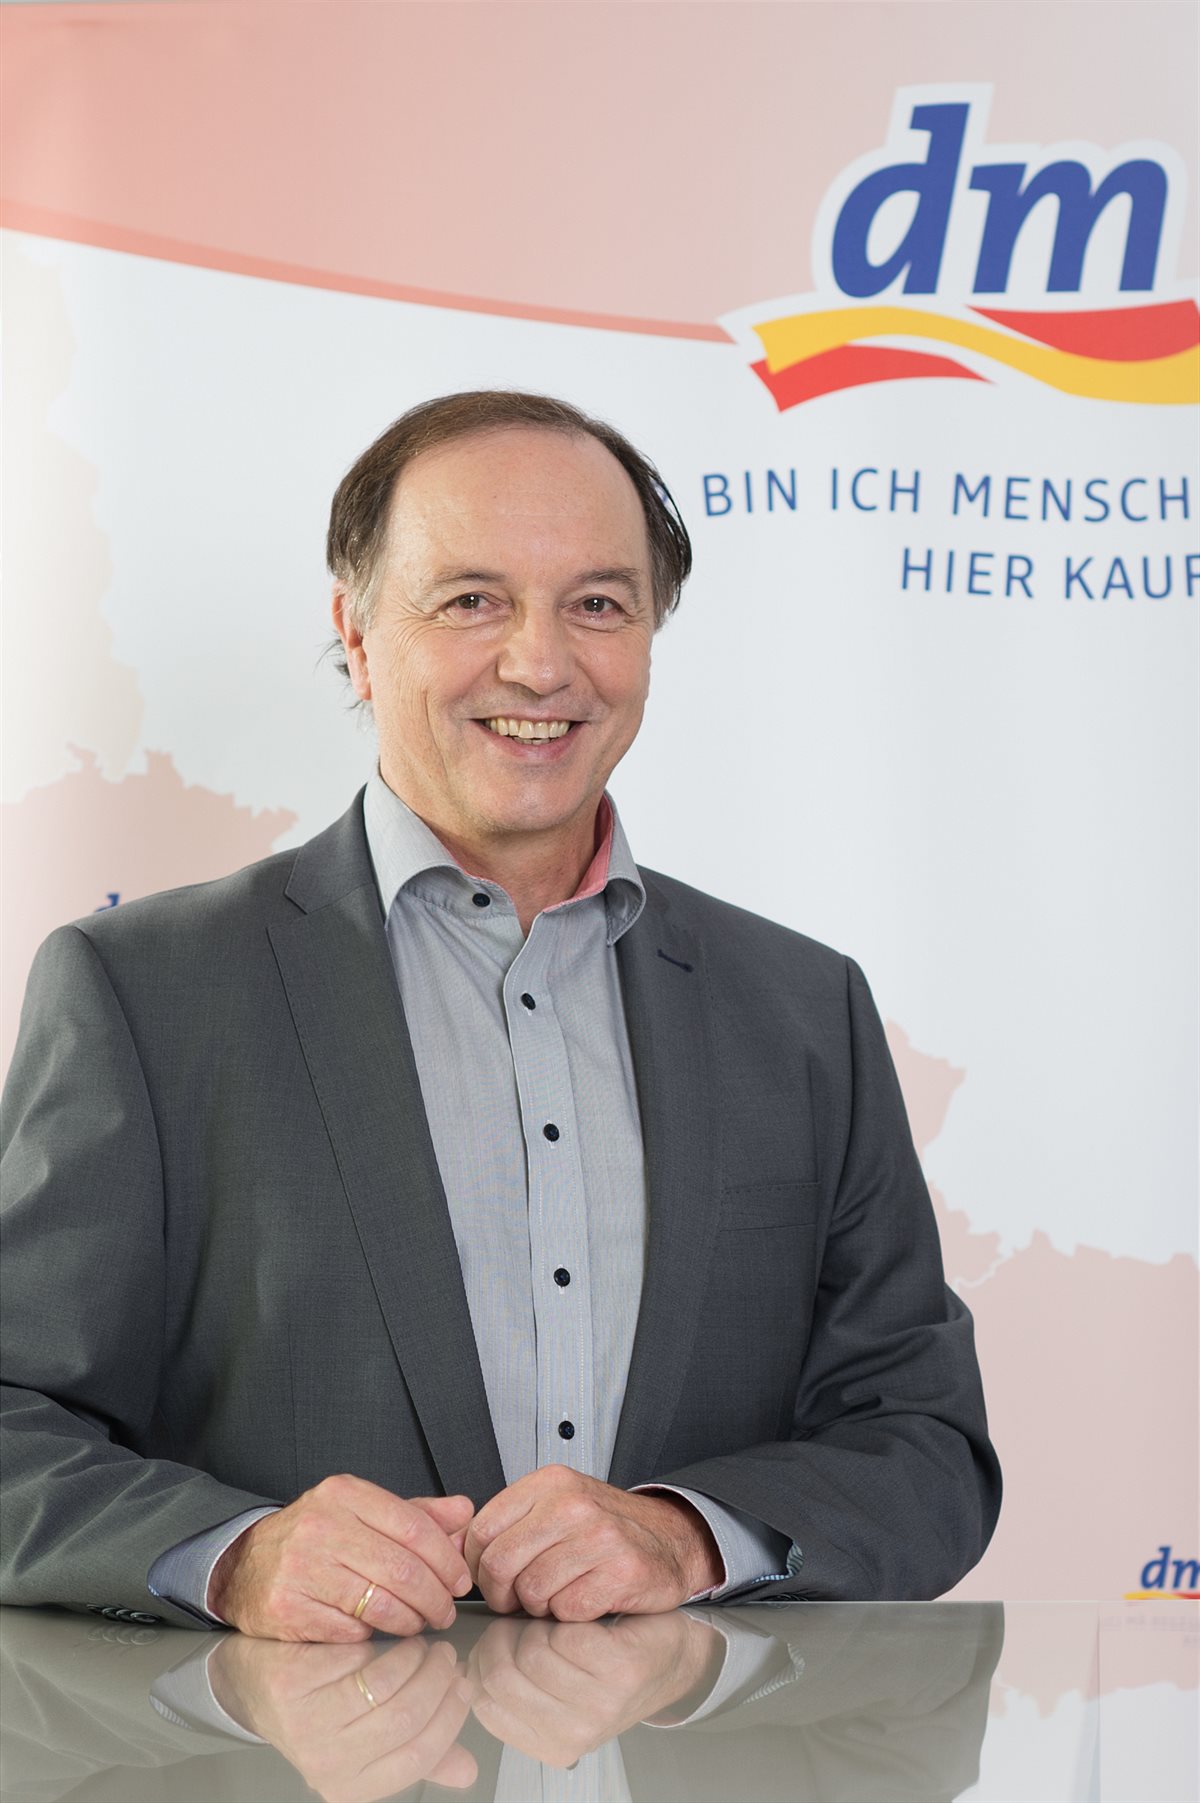 Dipl.-Inform. Manfred Kühner, stv. Vorsitzender der dm Geschäftsführung